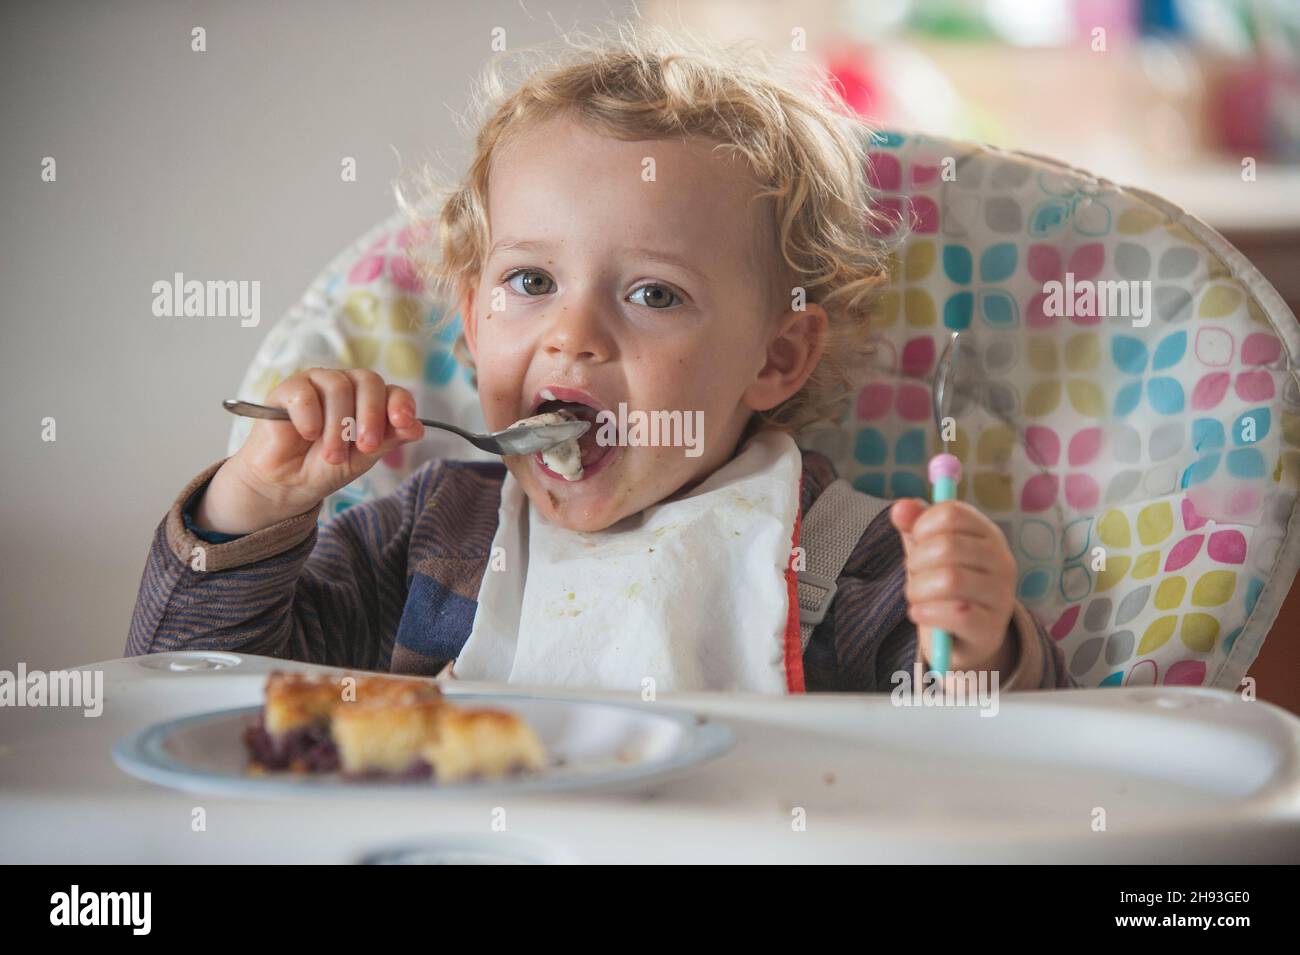 Une petite fille de 2 ans mange un peu de gâteau et de crème glacée comme collation de l'après-midi sur une chaise haute. Banque D'Images